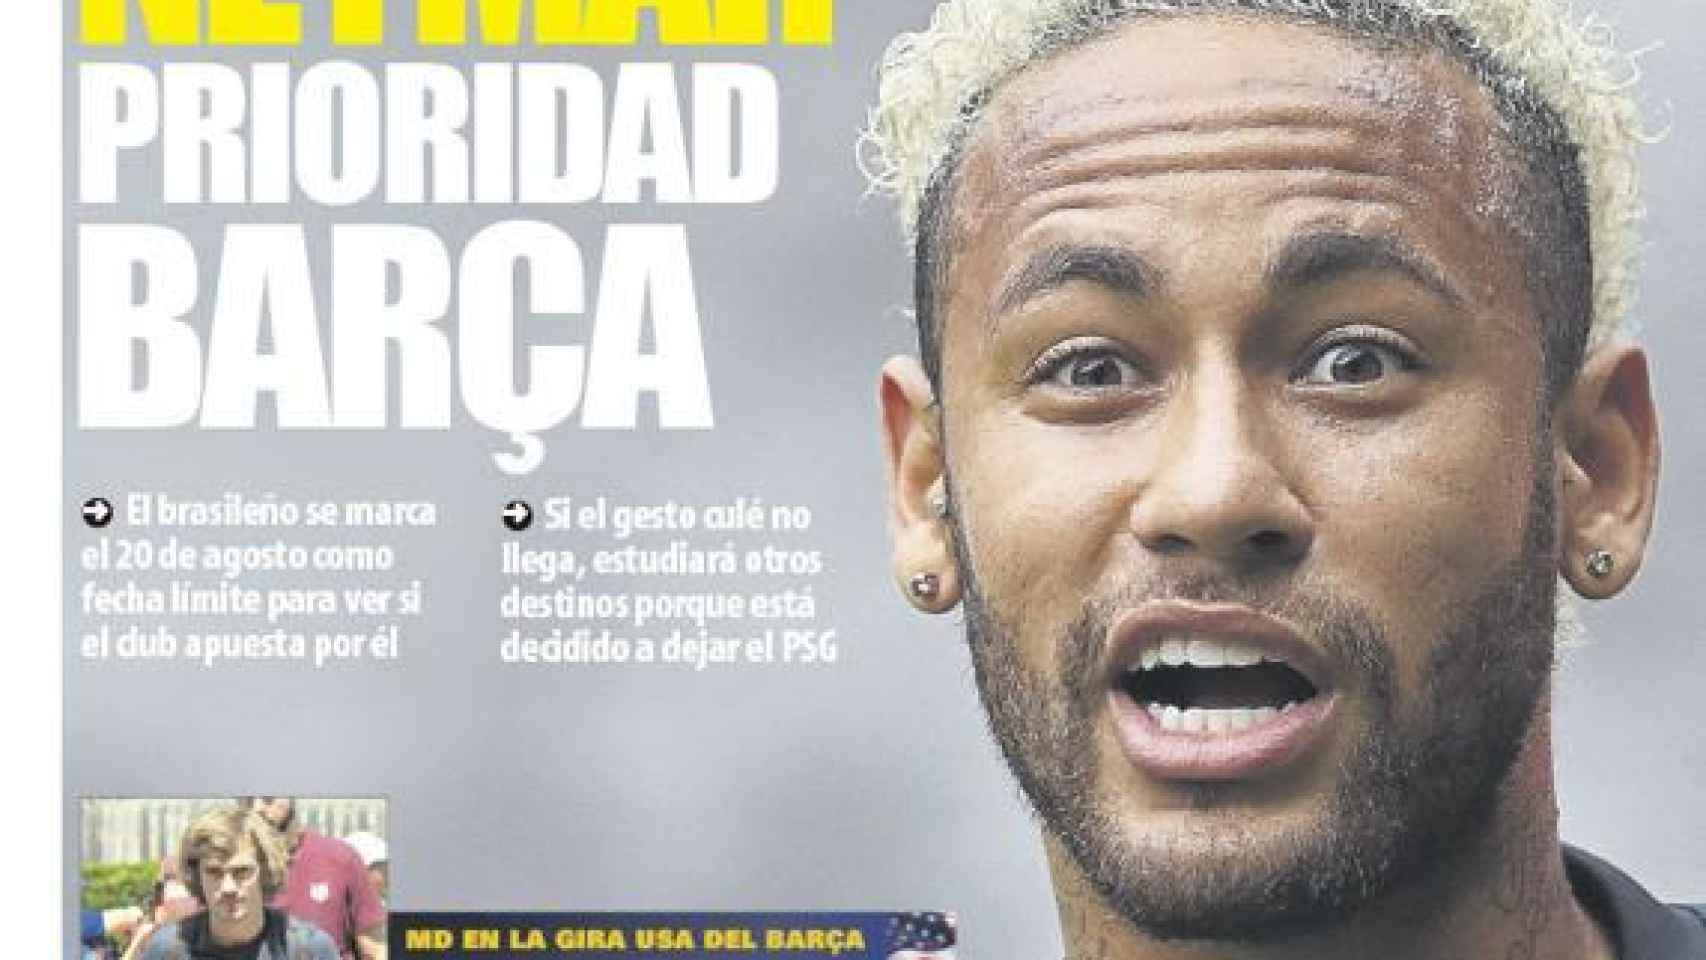 La portada del diario Mundo Deportivo (09/08/2019)